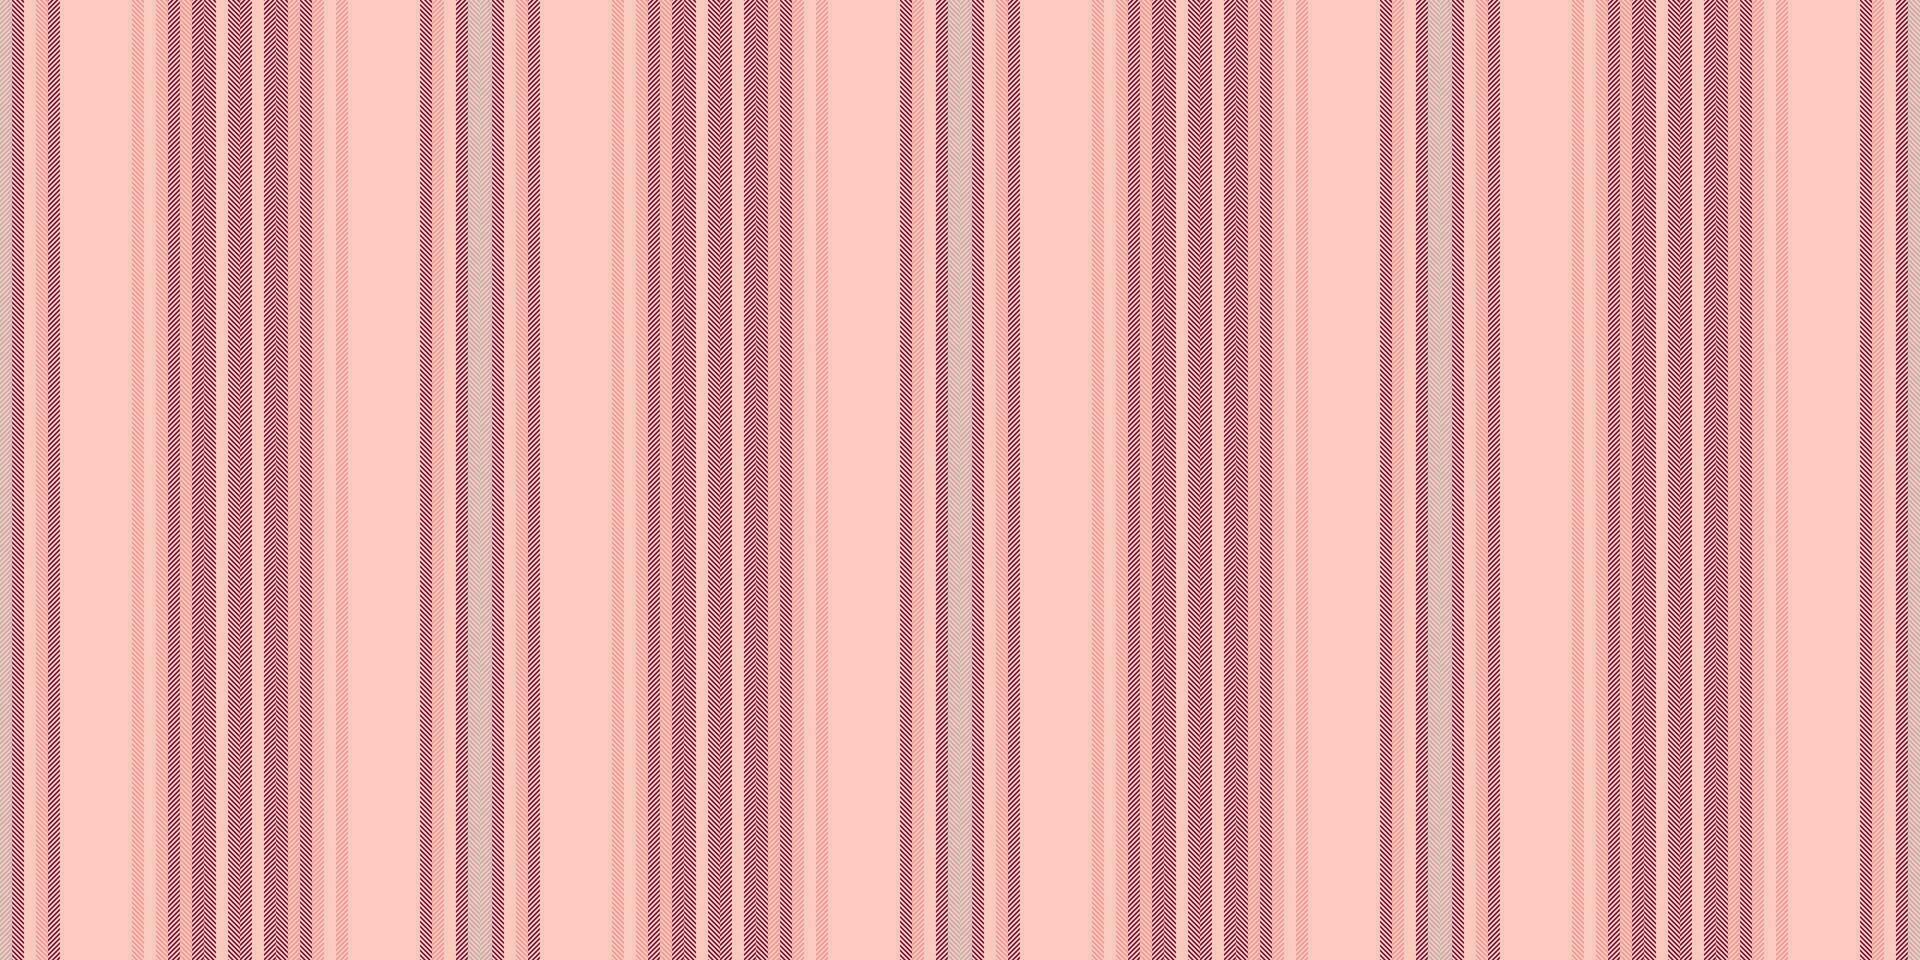 anuncio tela sin costura líneas, tranquilo vector antecedentes vertical. clásico textura raya modelo textil en ligero y rosado colores.